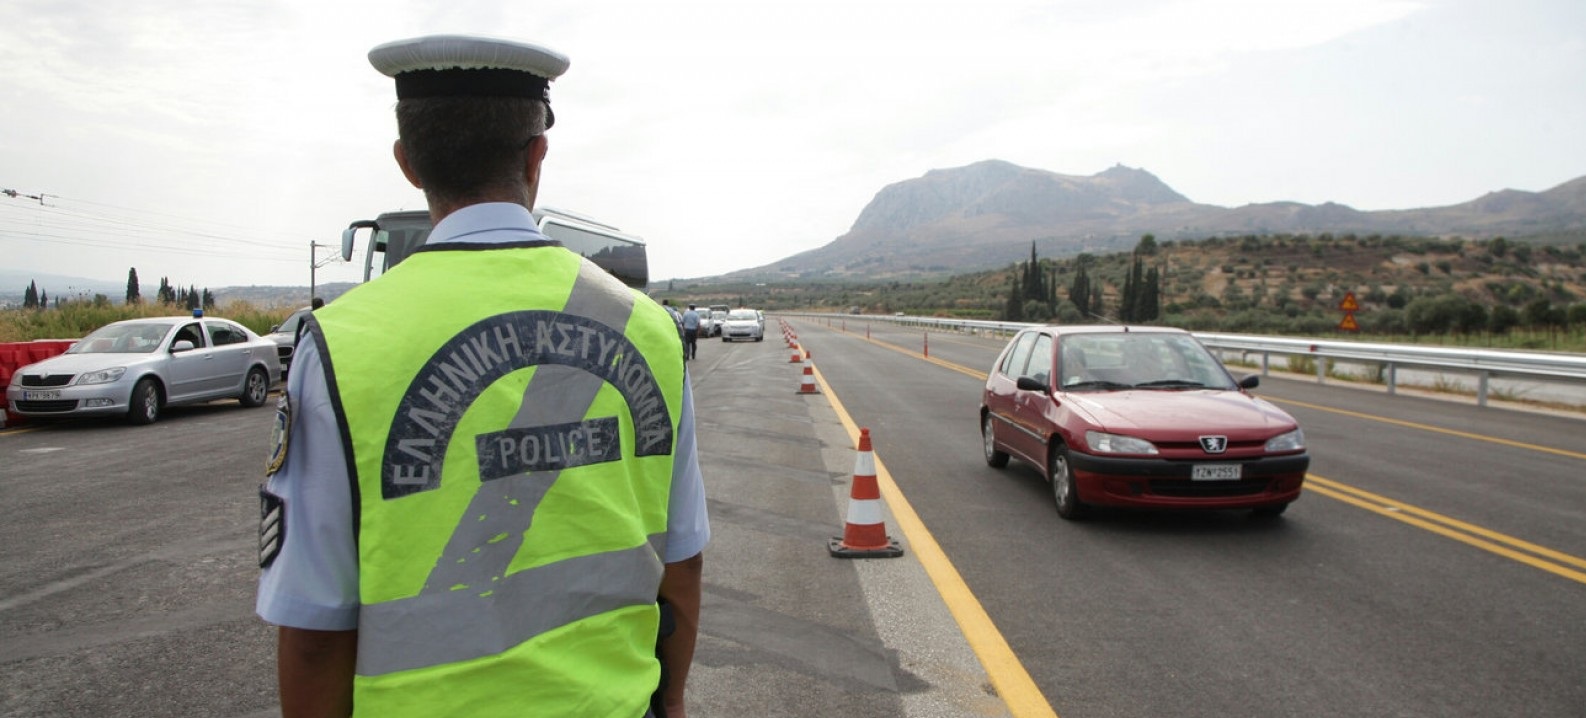 Απαγόρευση μετακινήσεων: Ξεκινούν να στήνονται «checkpoints» σε όλη την Ελλάδα – 300 ευρώ πρόστιμο & αφαίρεση πινακίδων